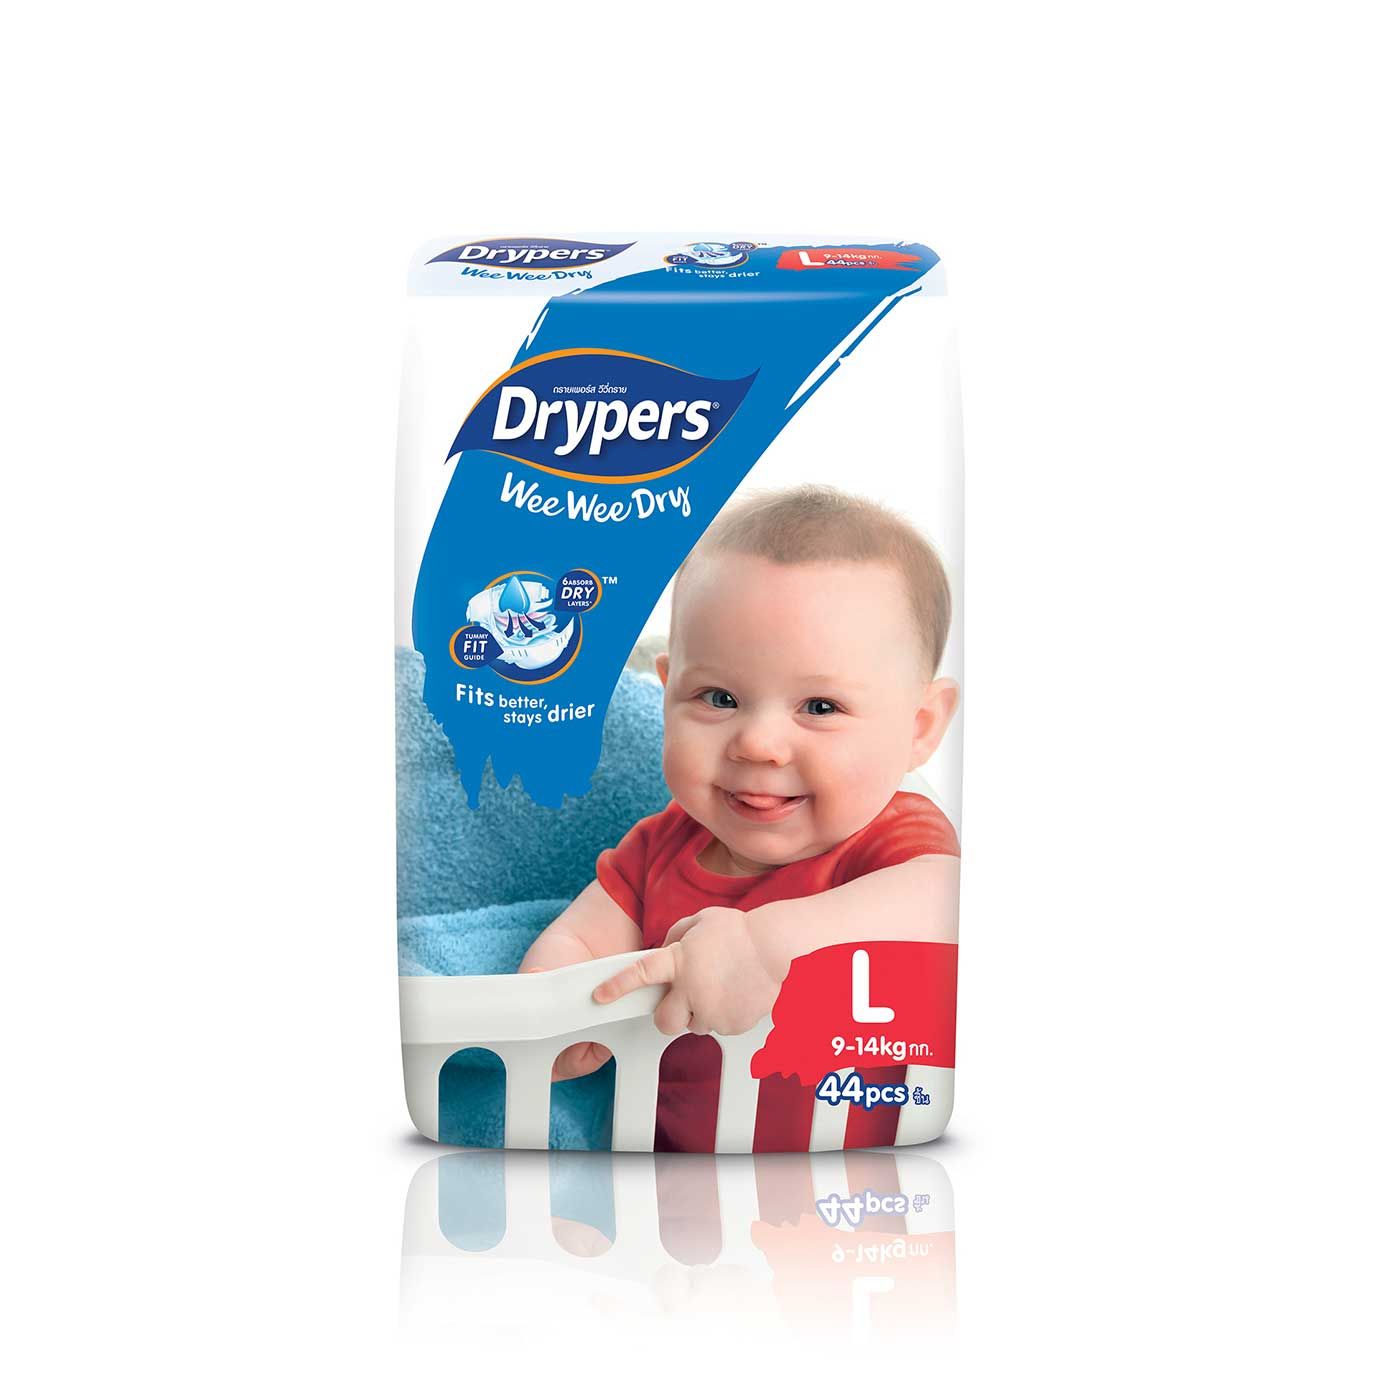 Drypers Wee Wee Dry - L 44s - 1